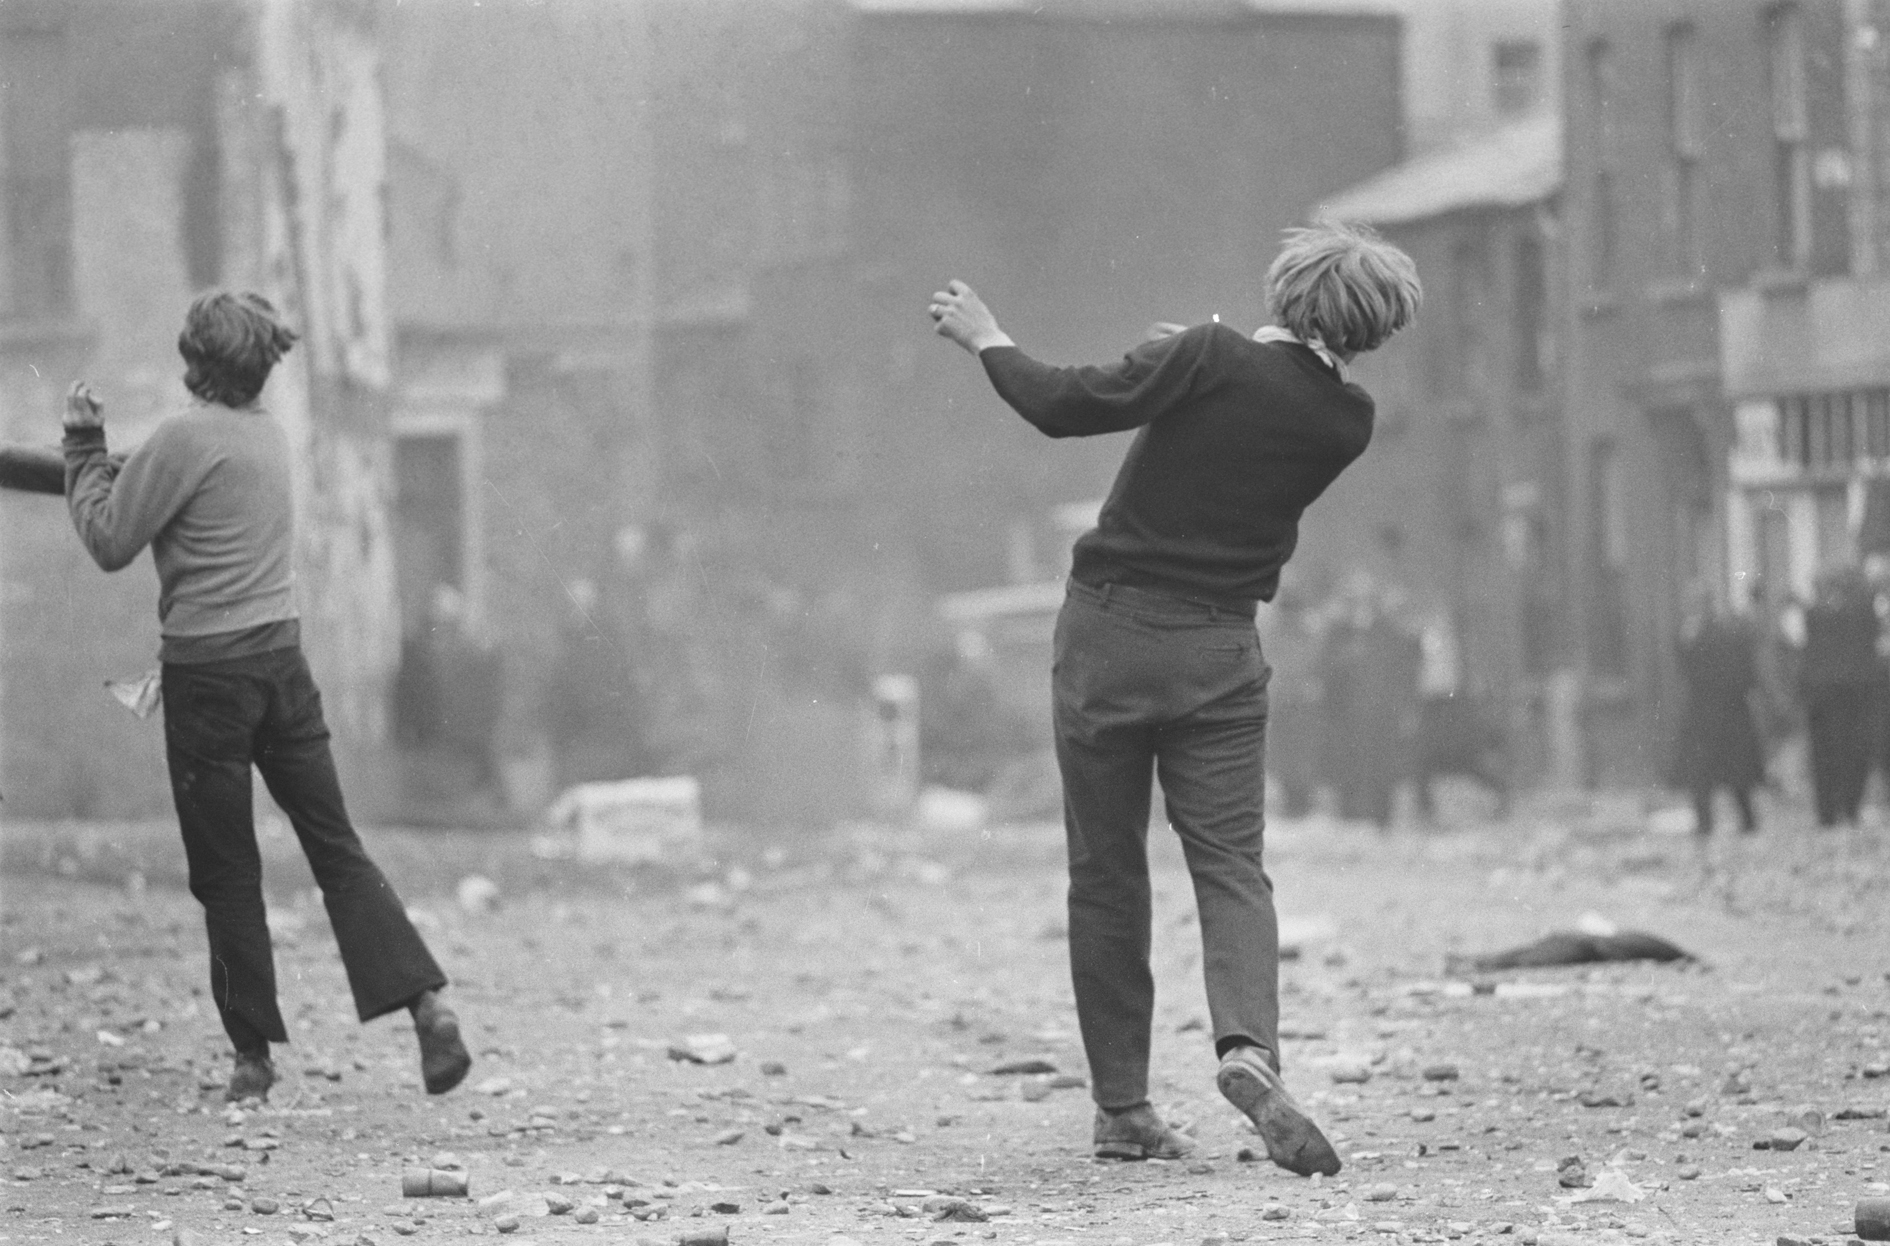 Gilles CARON, Manifestations anticatholiques à Londonderry, 1969 © Gilles Caron / Fondation Gilles Caron / Gamma Rapho